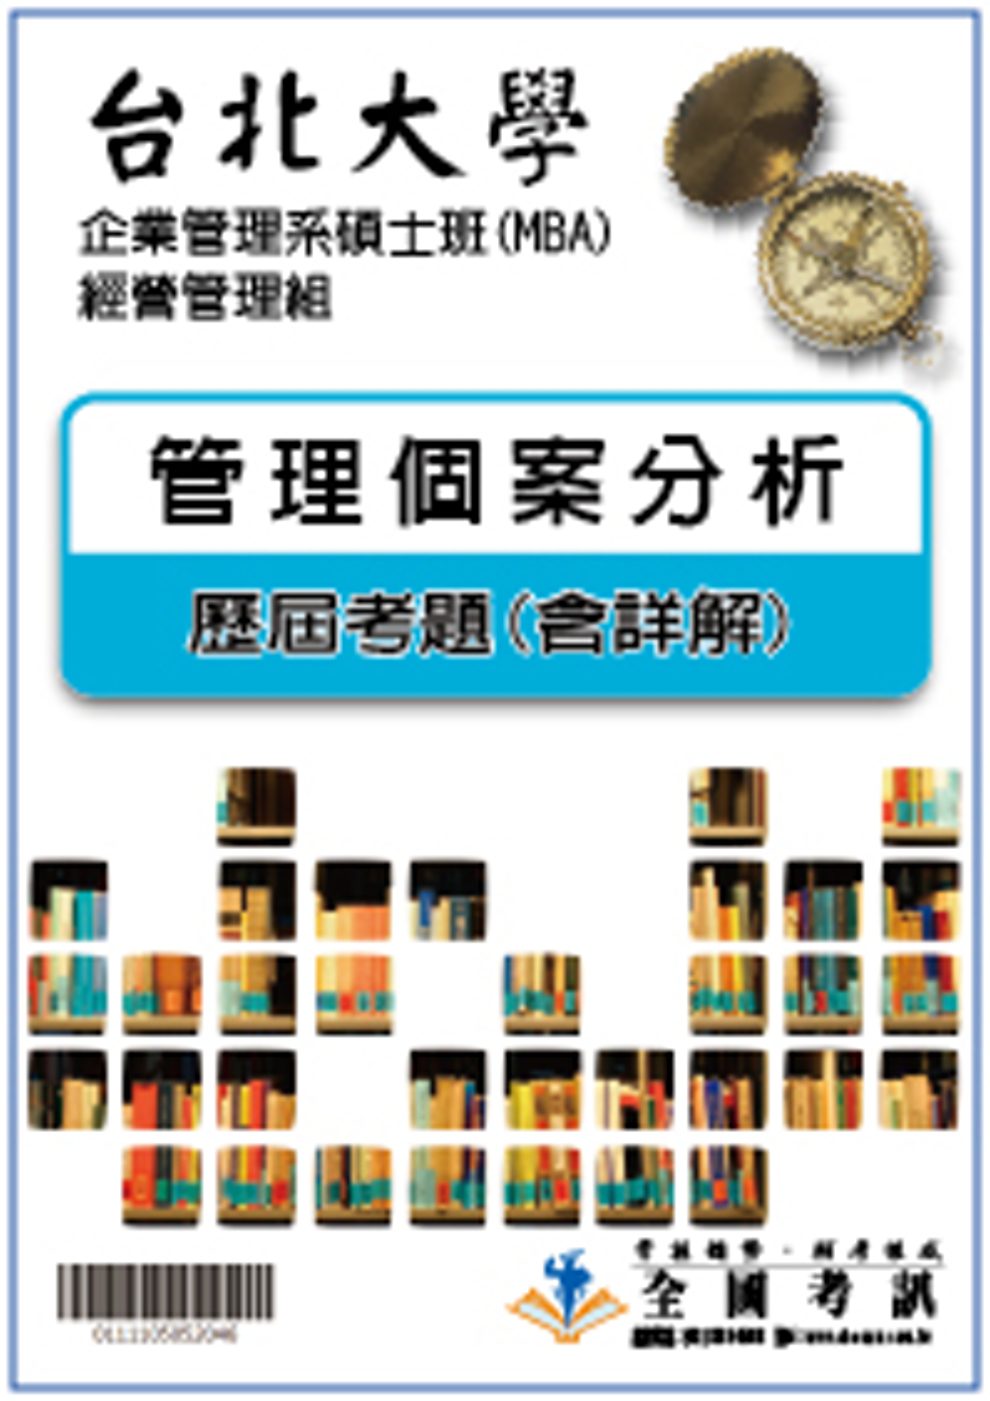 考古題解答-台北大學-企業管理系碩士班(MBA)-經營管理組